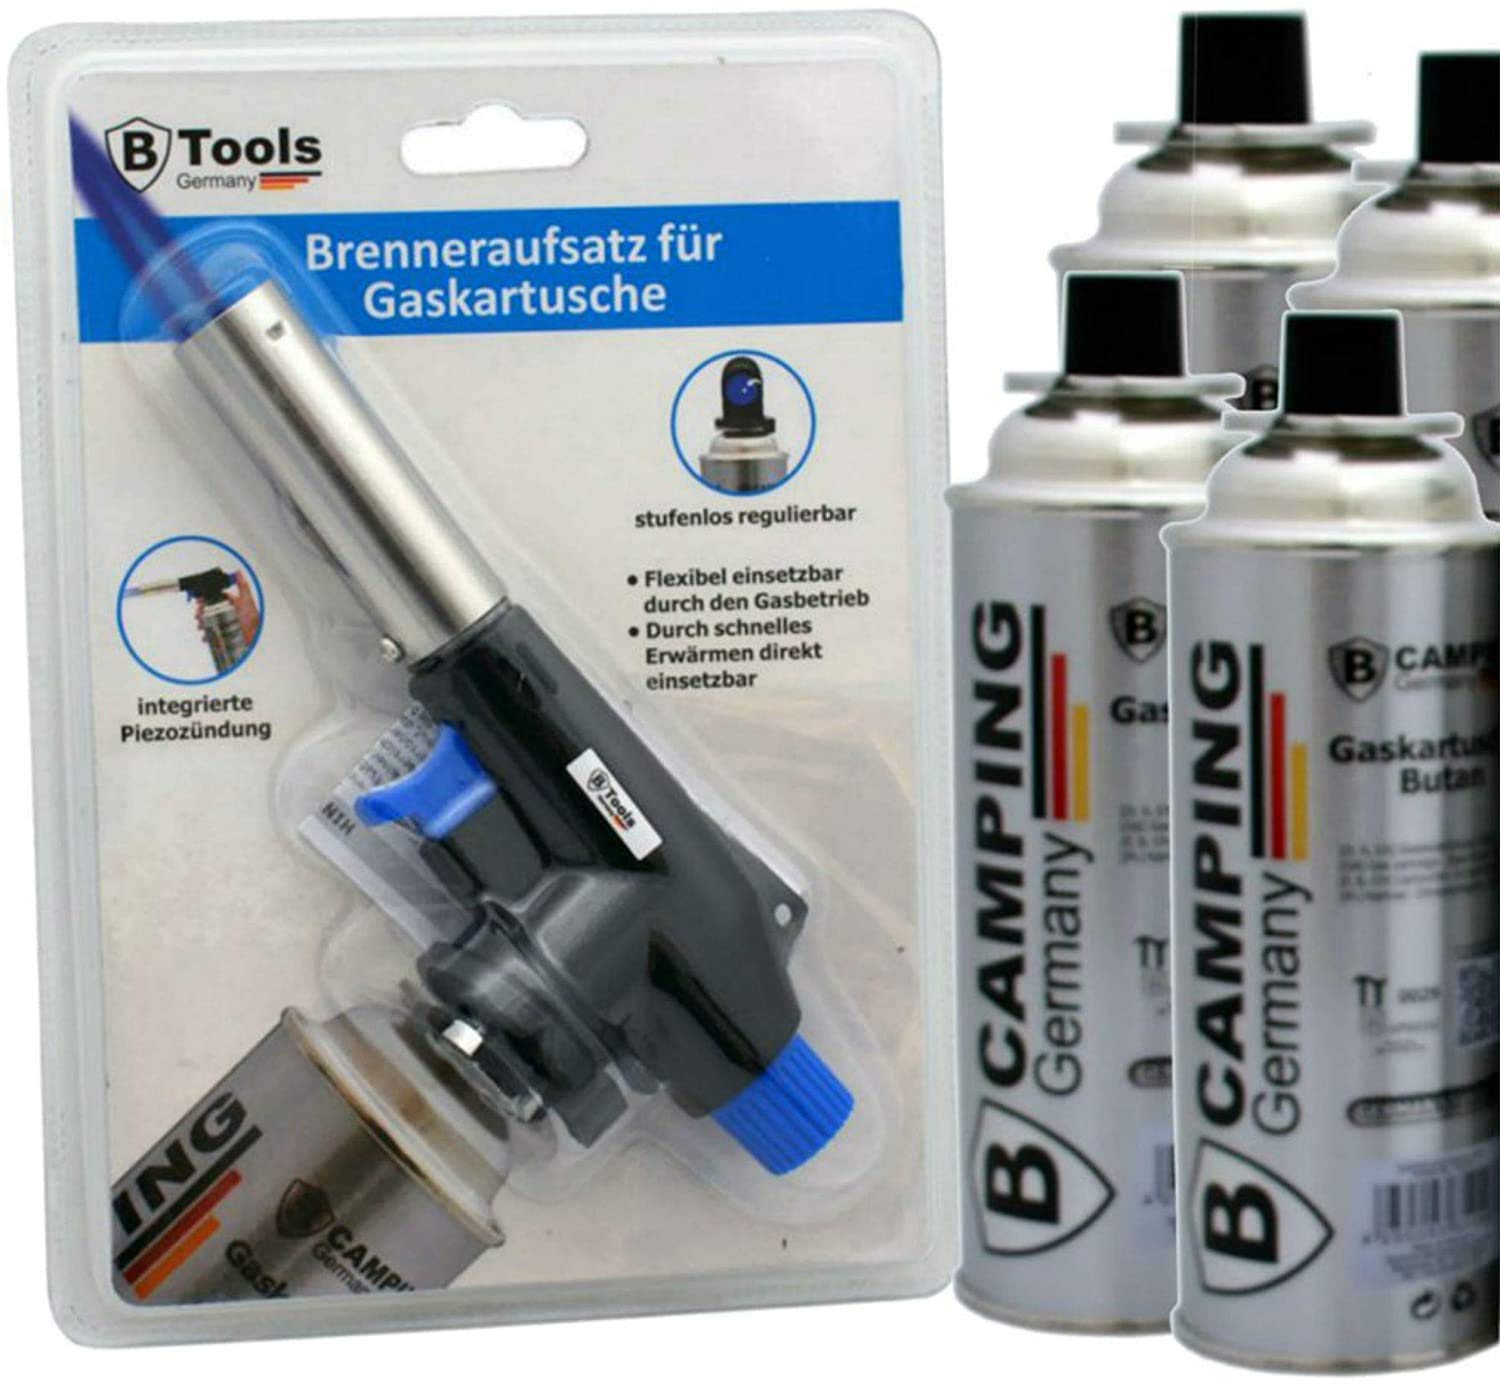 TronicXL Hand Unkrautbrenner + 4 Kartuschen Butangas - Unkrautvernichter Gasbrenner Abflammgerät Gas Unkrautverbrenner Flammenwerfer mit Piezo Zündung